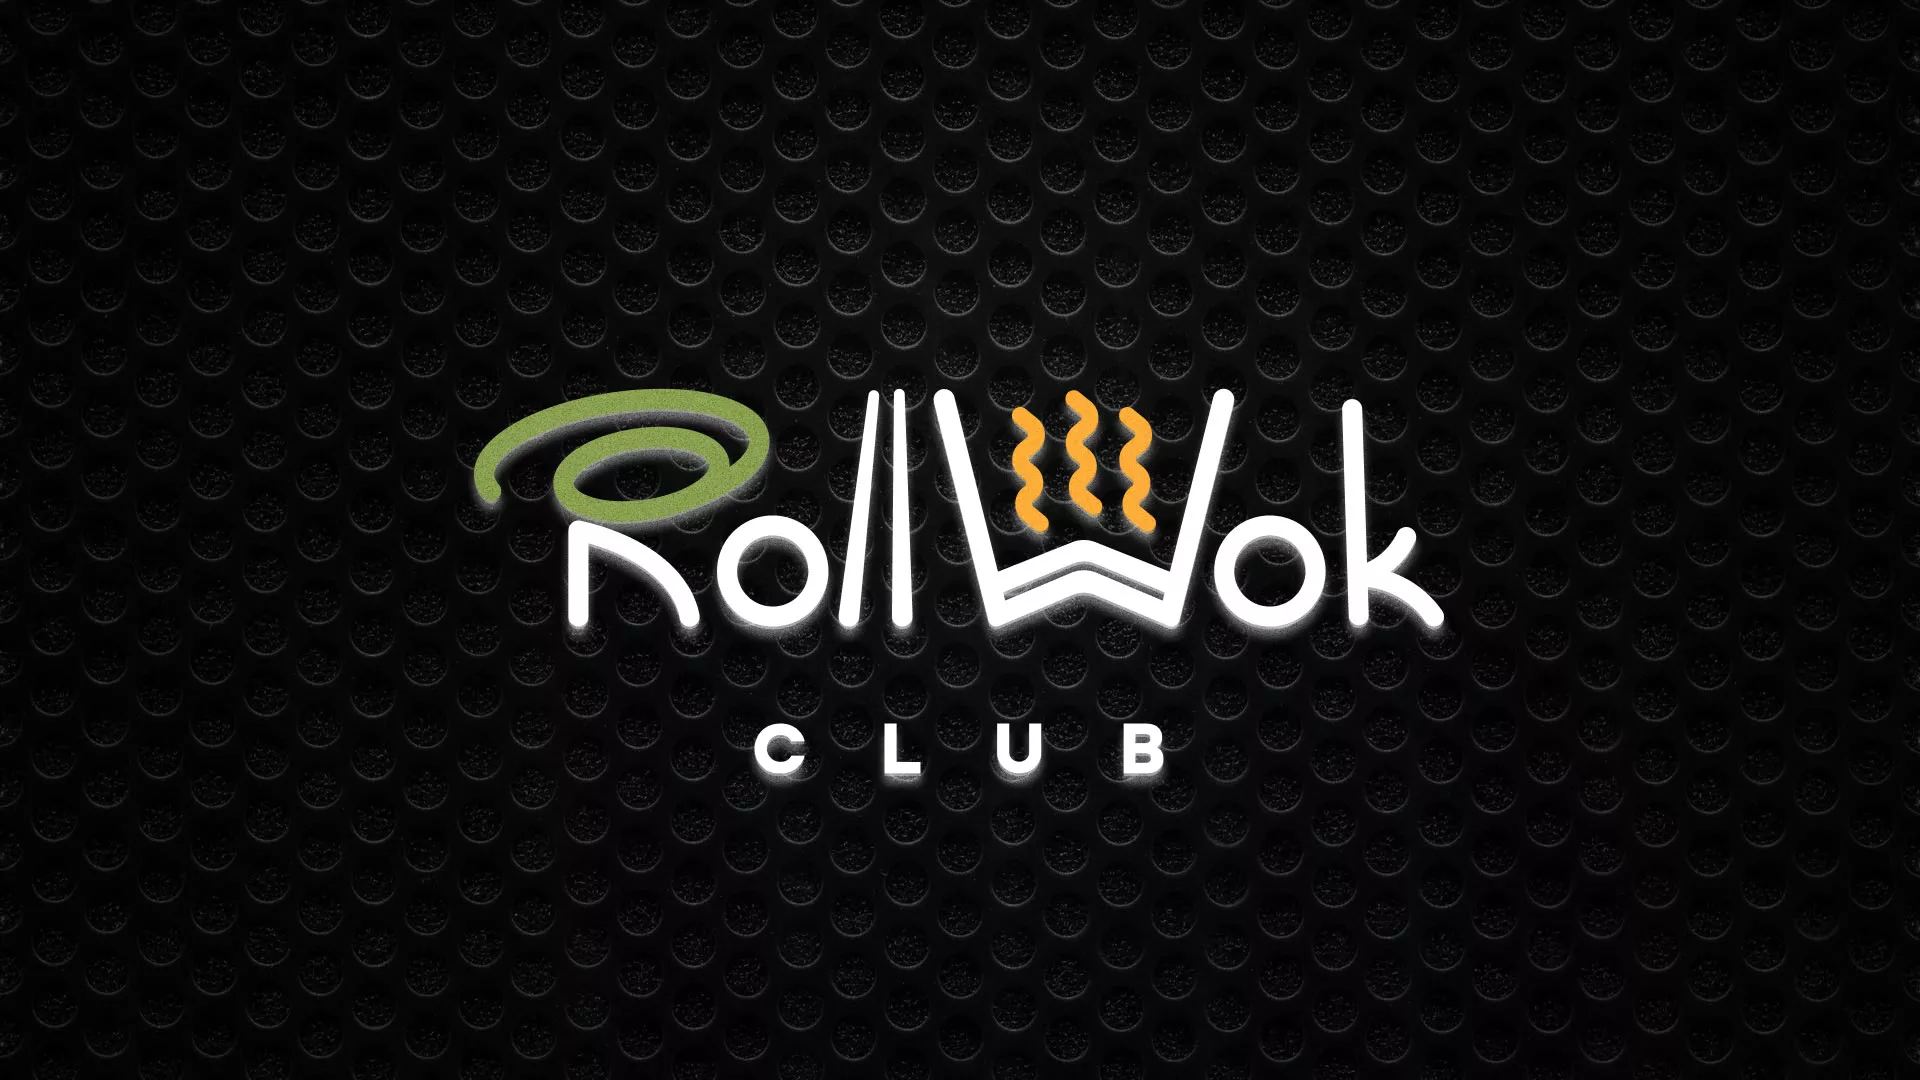 Брендирование торговых точек суши-бара «Roll Wok Club» в Нарткале